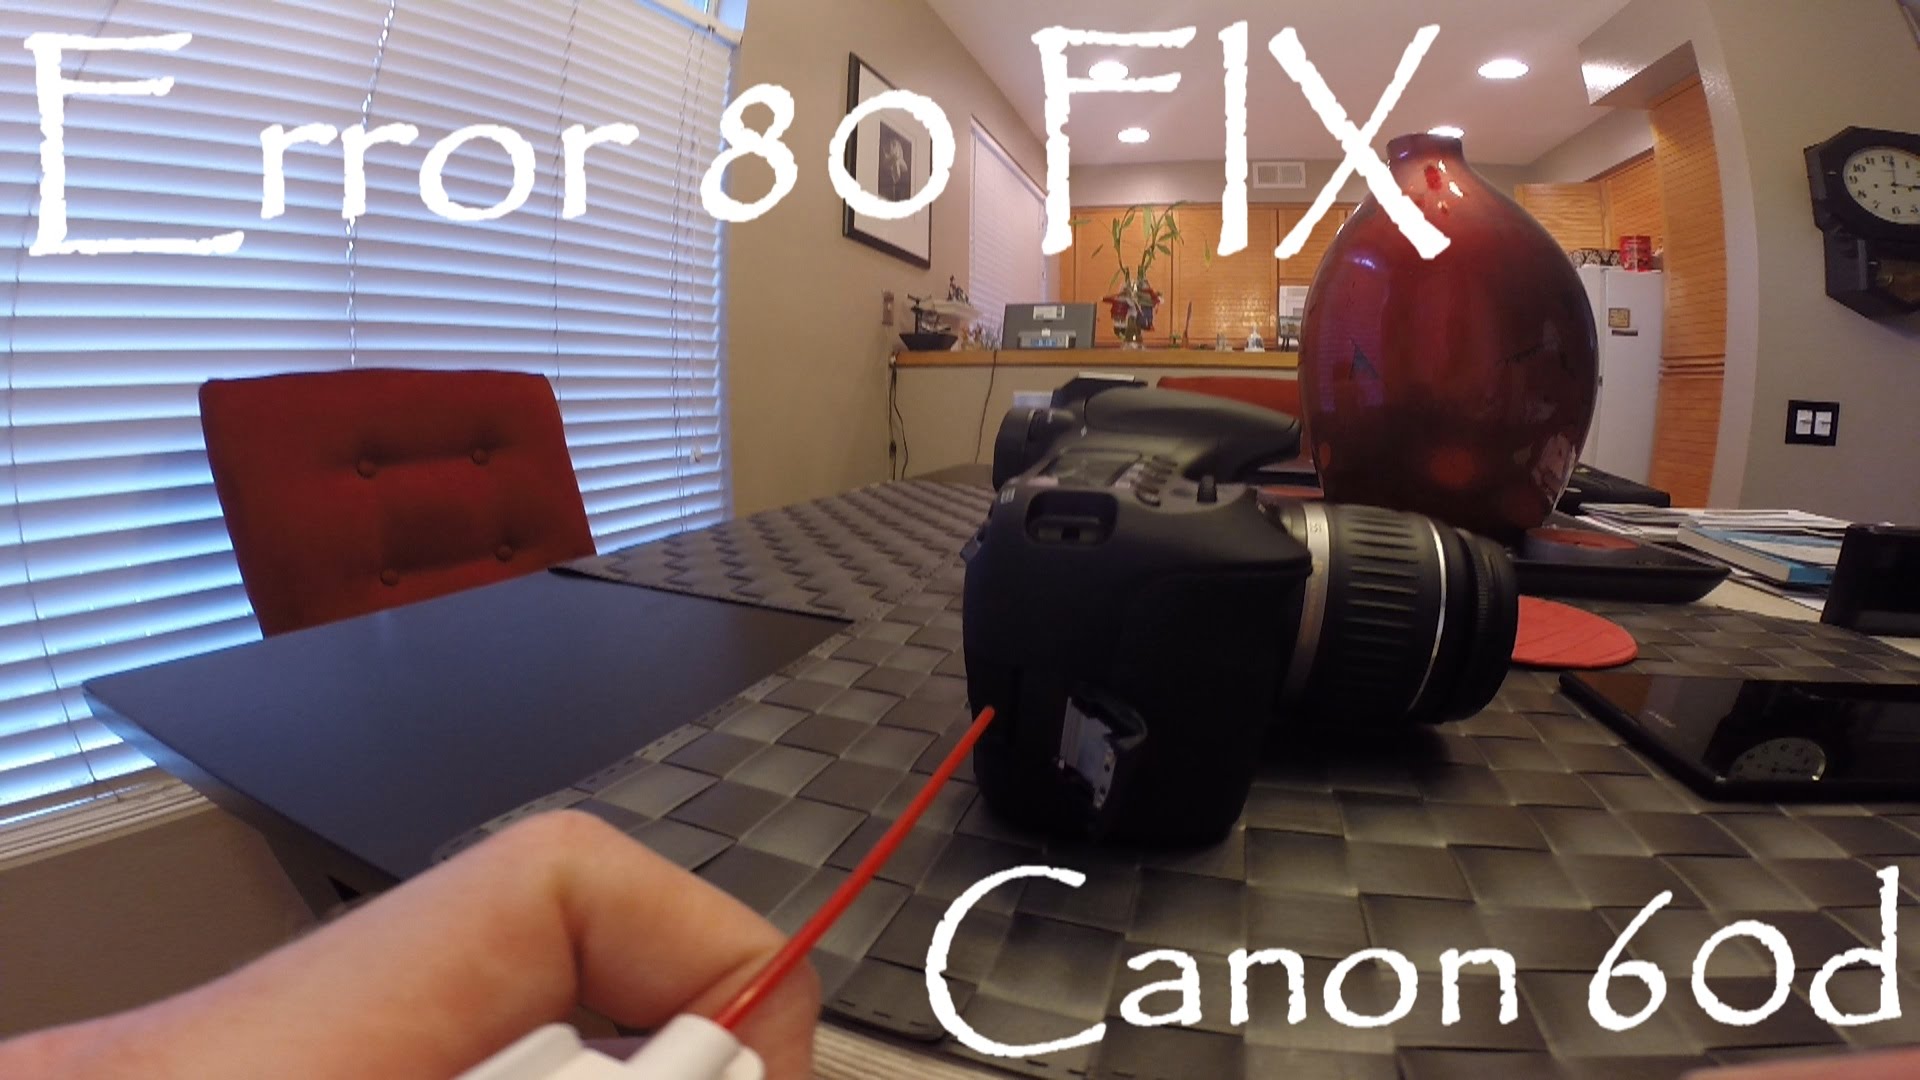 Canon 60d DSLR Camera Error 80 FIX